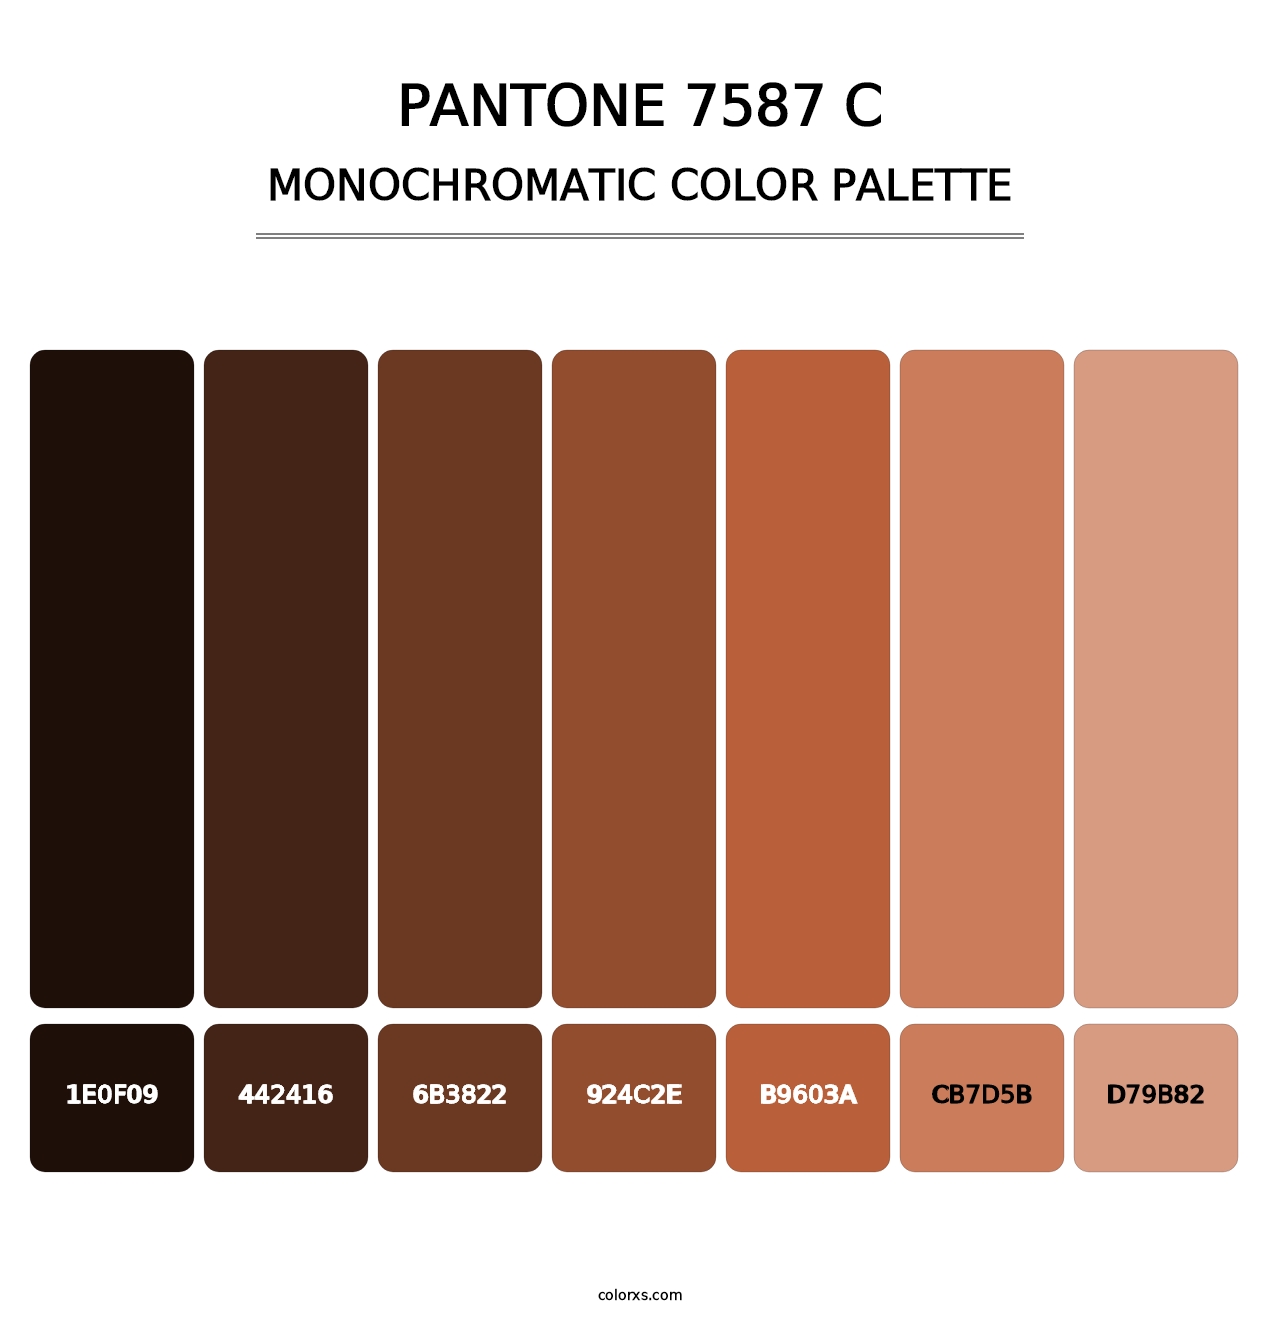 PANTONE 7587 C - Monochromatic Color Palette